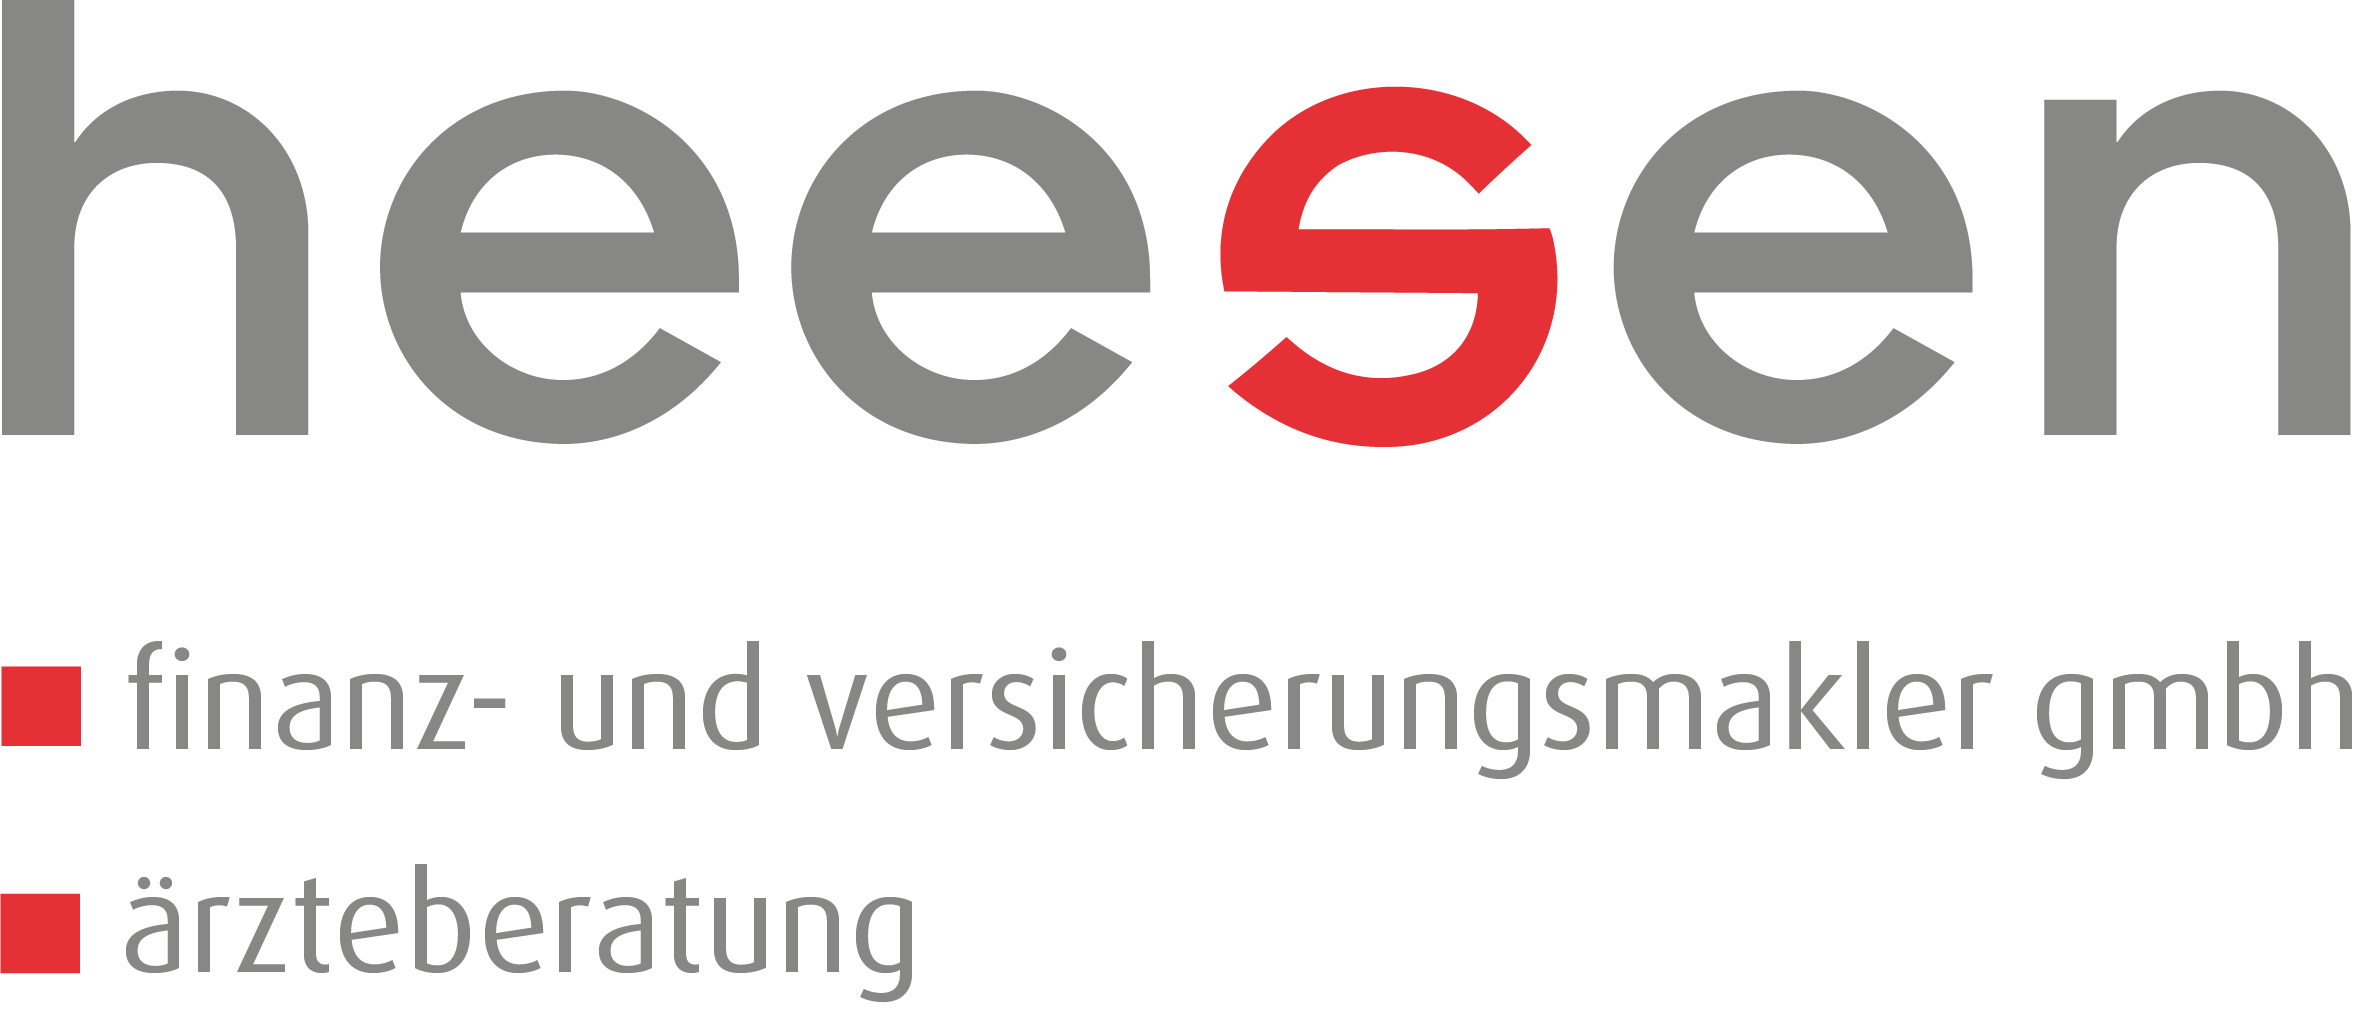 heesen-finanz-und versicherungsmakler GmbH, ärzteberatung Hannover